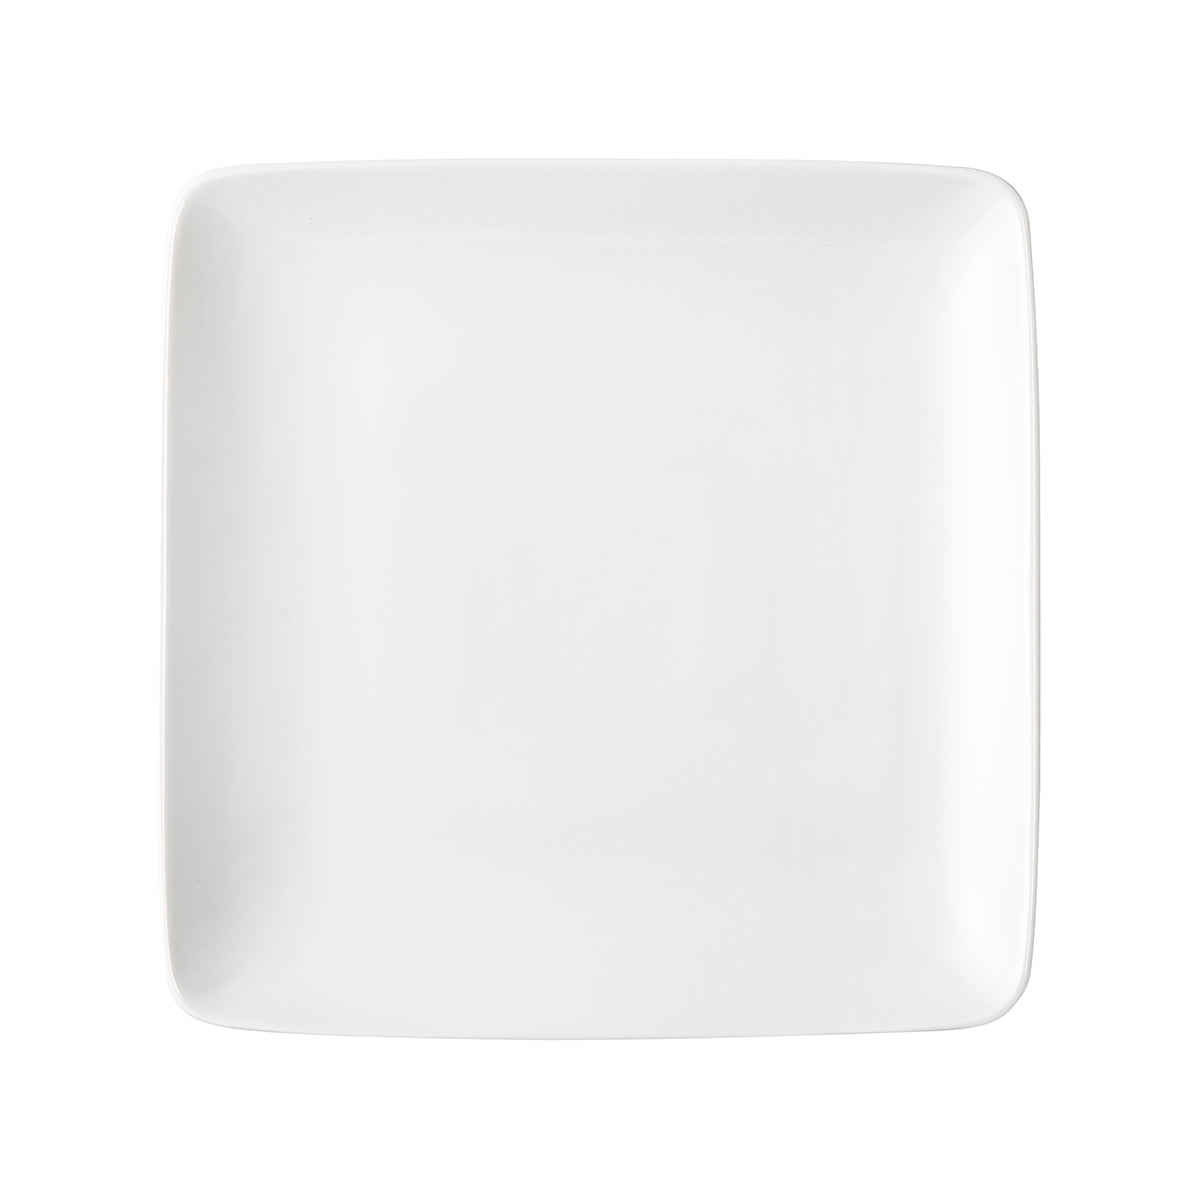 Assiette carrée blanche 18x18 cm en plastique jetable - les 12